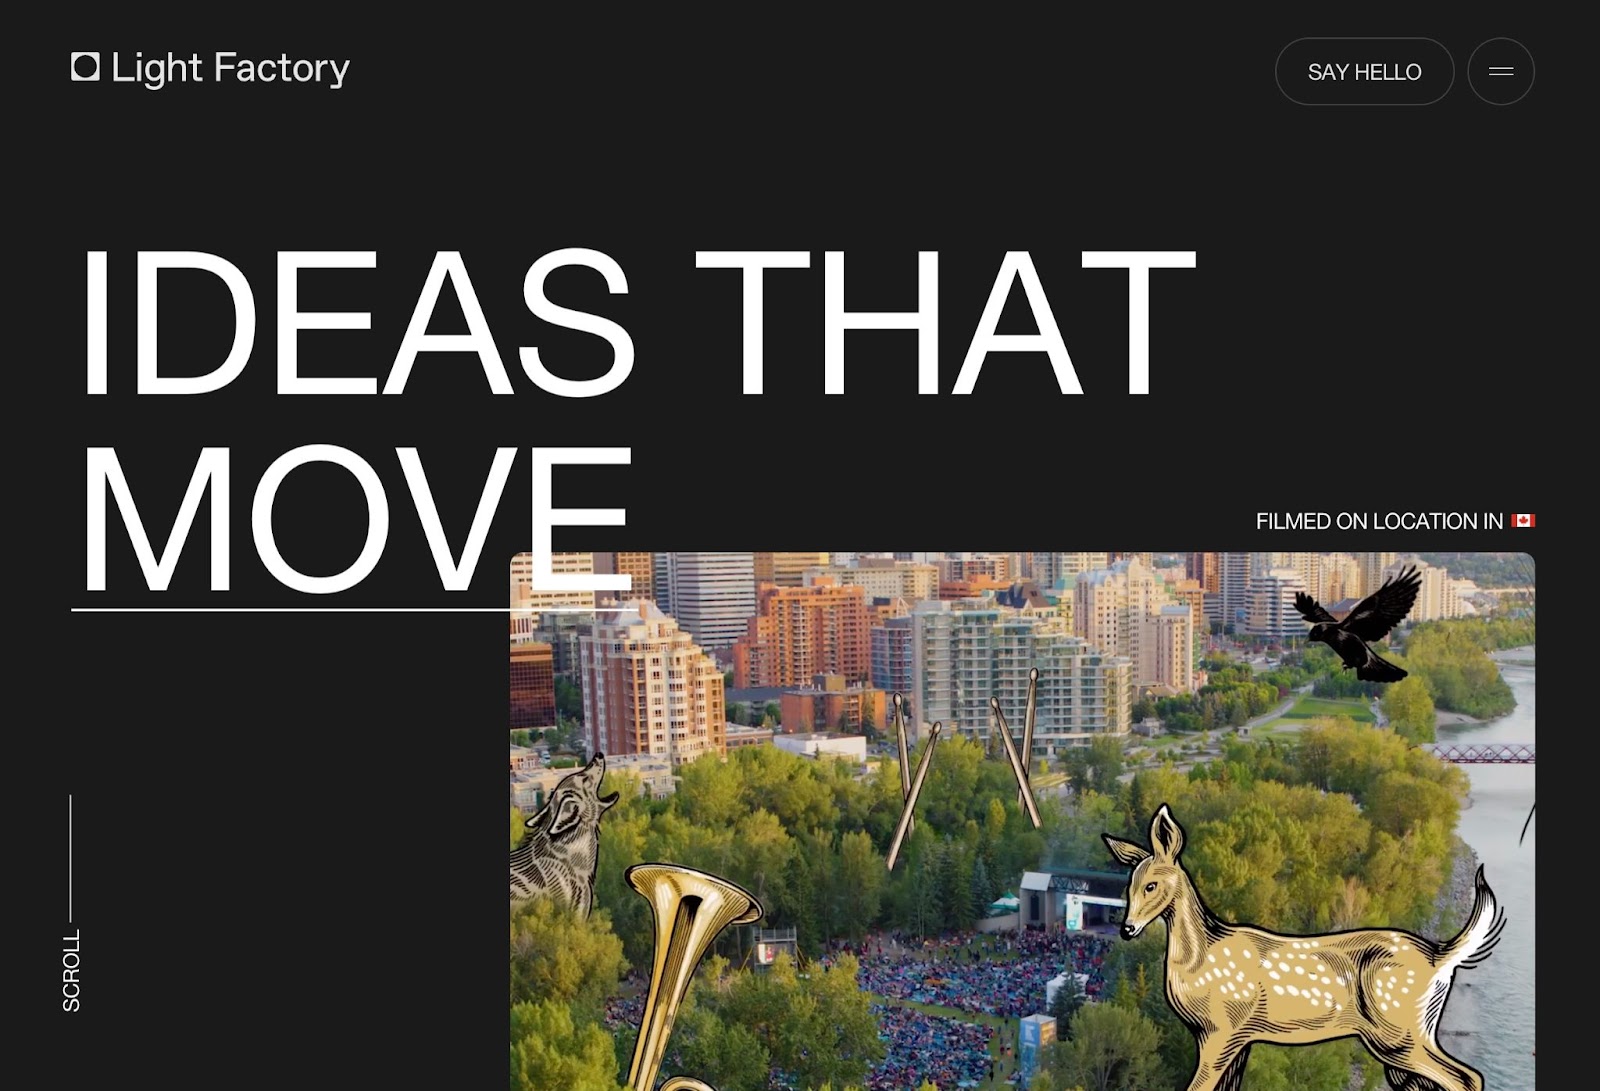 도시 이미지 위에 있는 뿔과 사슴의 삽화와 함께 토론토의 조감도 샷 위에 "IDEAS THT MOVE"라는 큰 대문자 흰색 텍스트가 있는 Light Factory의 전체 검은색 사이트 헤더.